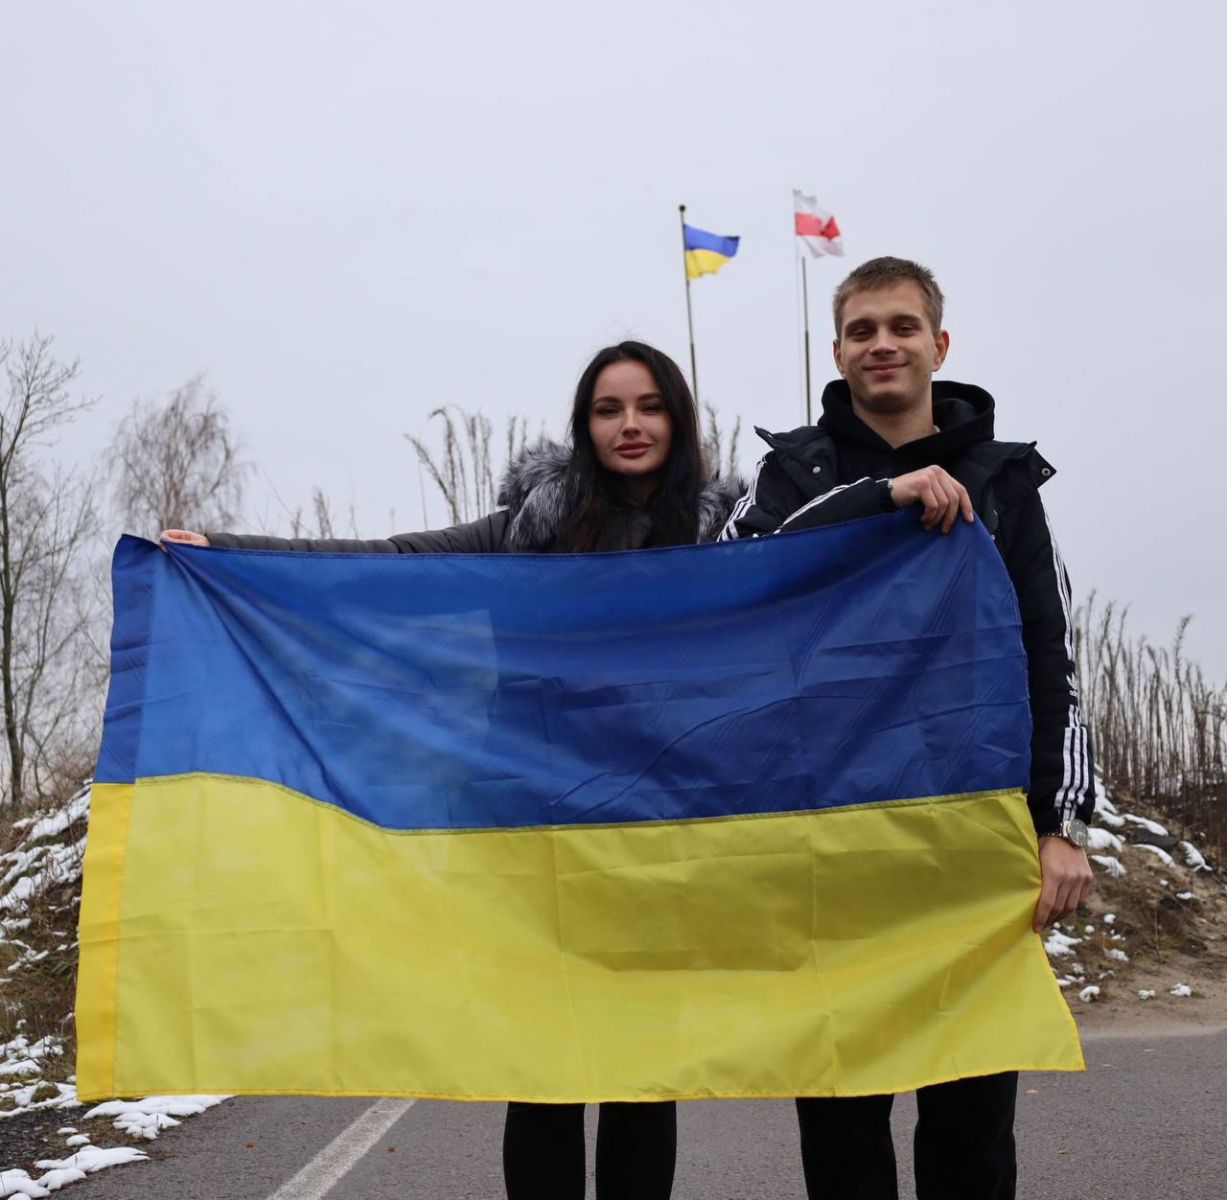 Богдан Єрмохін повернувся в Україну. Сьогодні Богдану виповнилося 18 років 